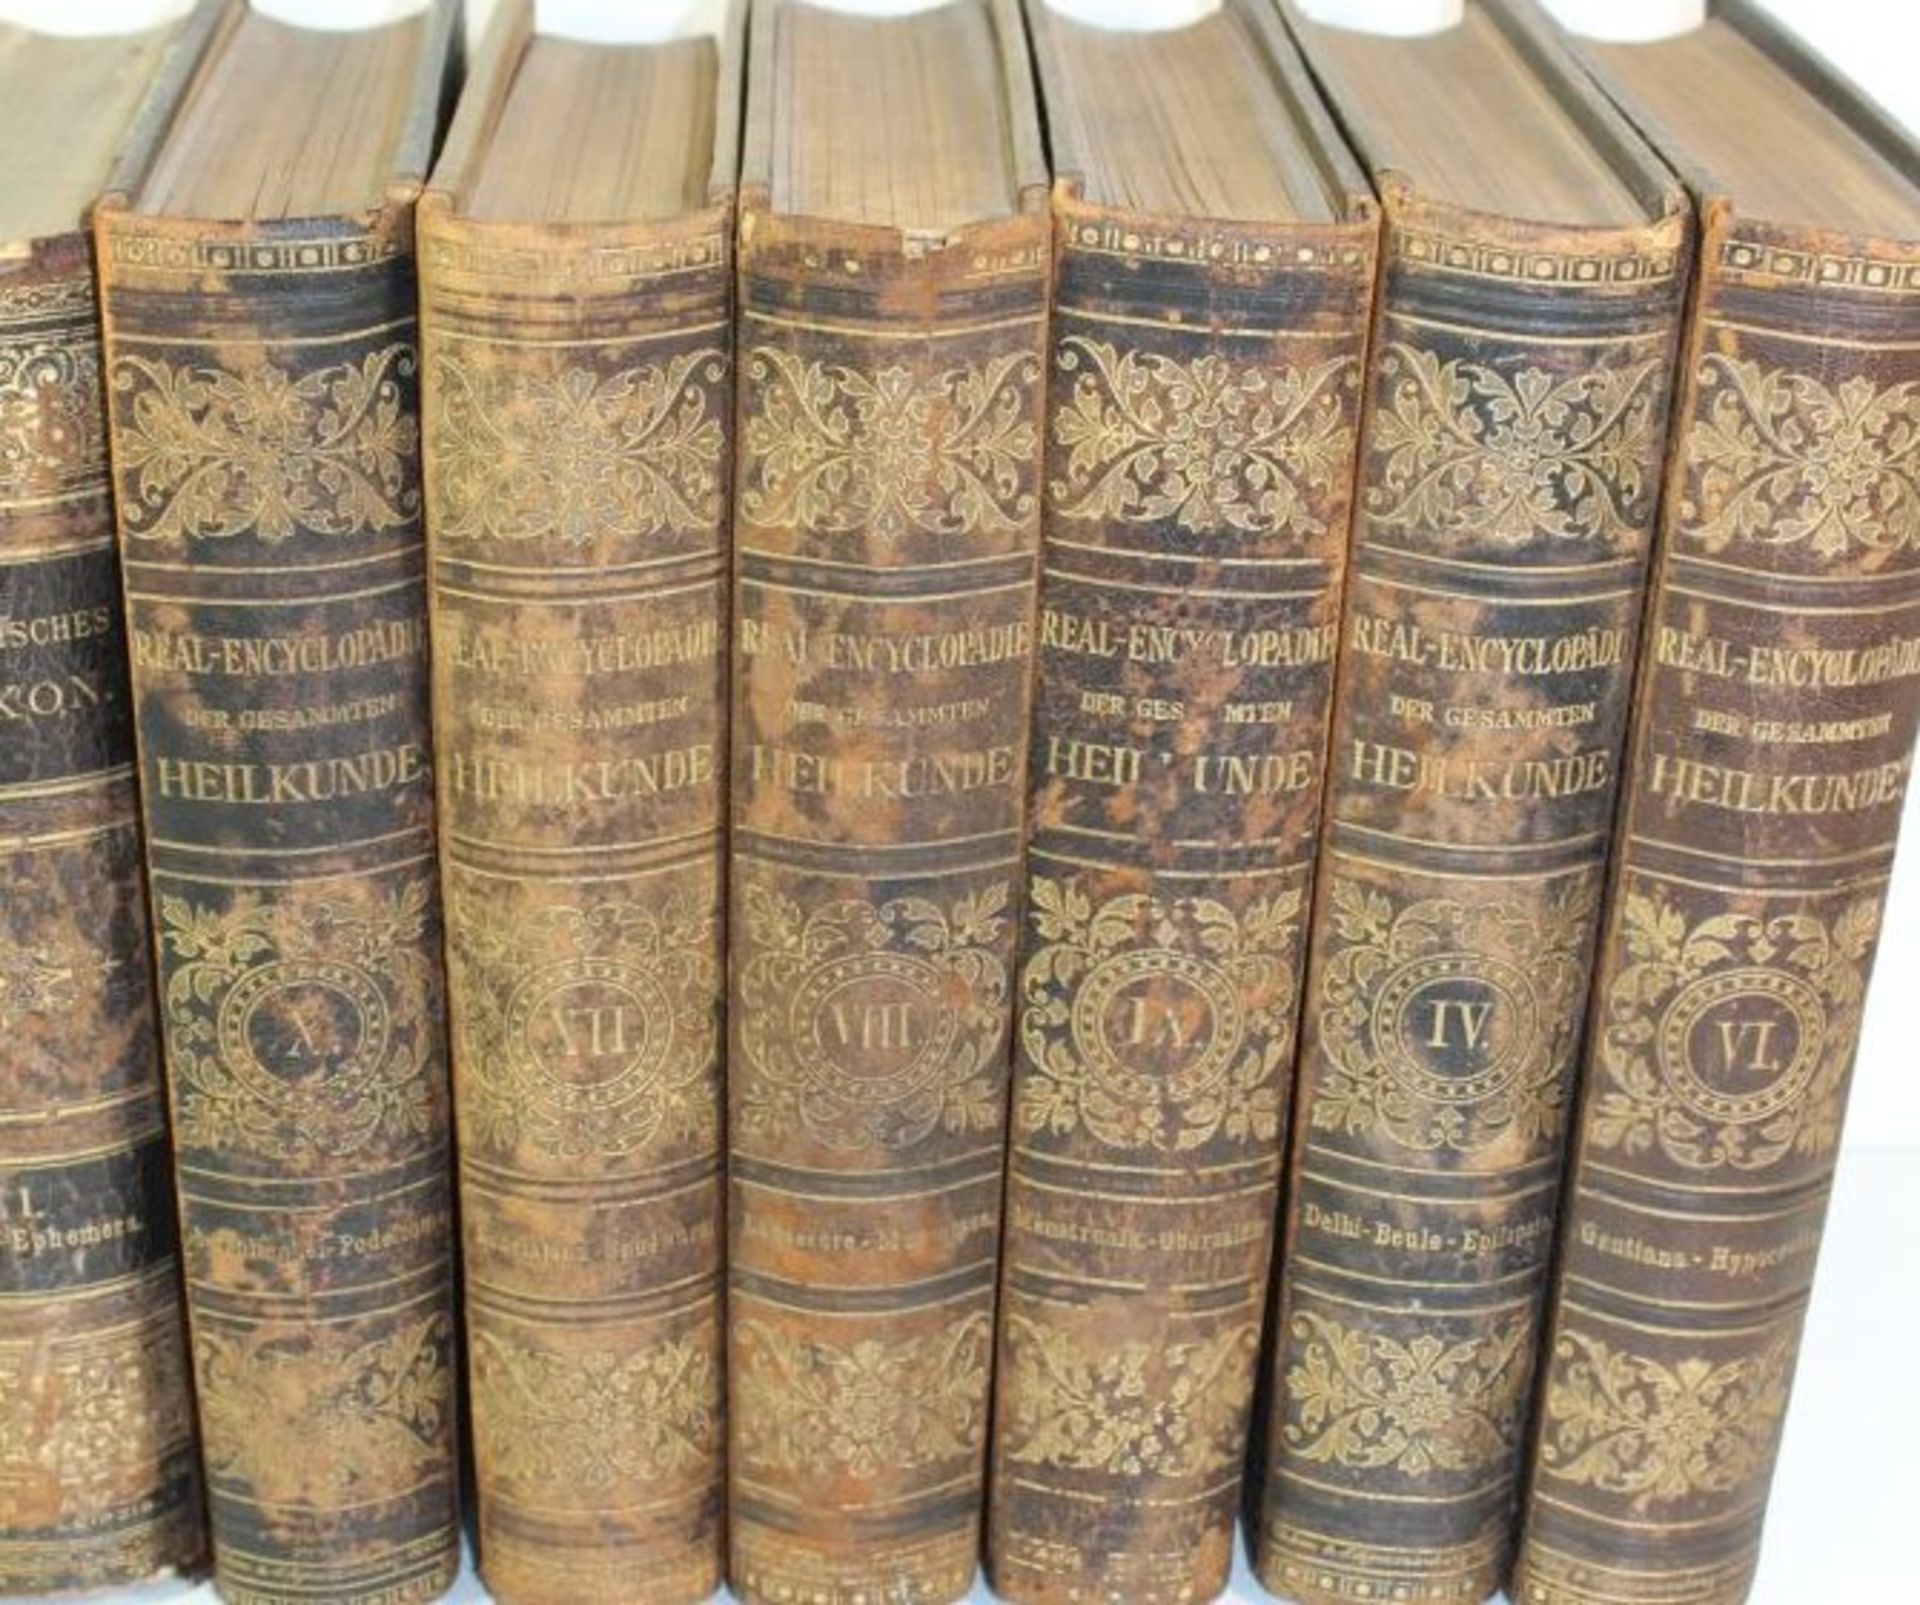 3 Bände Diagnostisches Lexikon 1893 Band 1-3, 6 Bände Real-Encyclopädie der Gesammten Heilkunde 1882 - Bild 3 aus 3